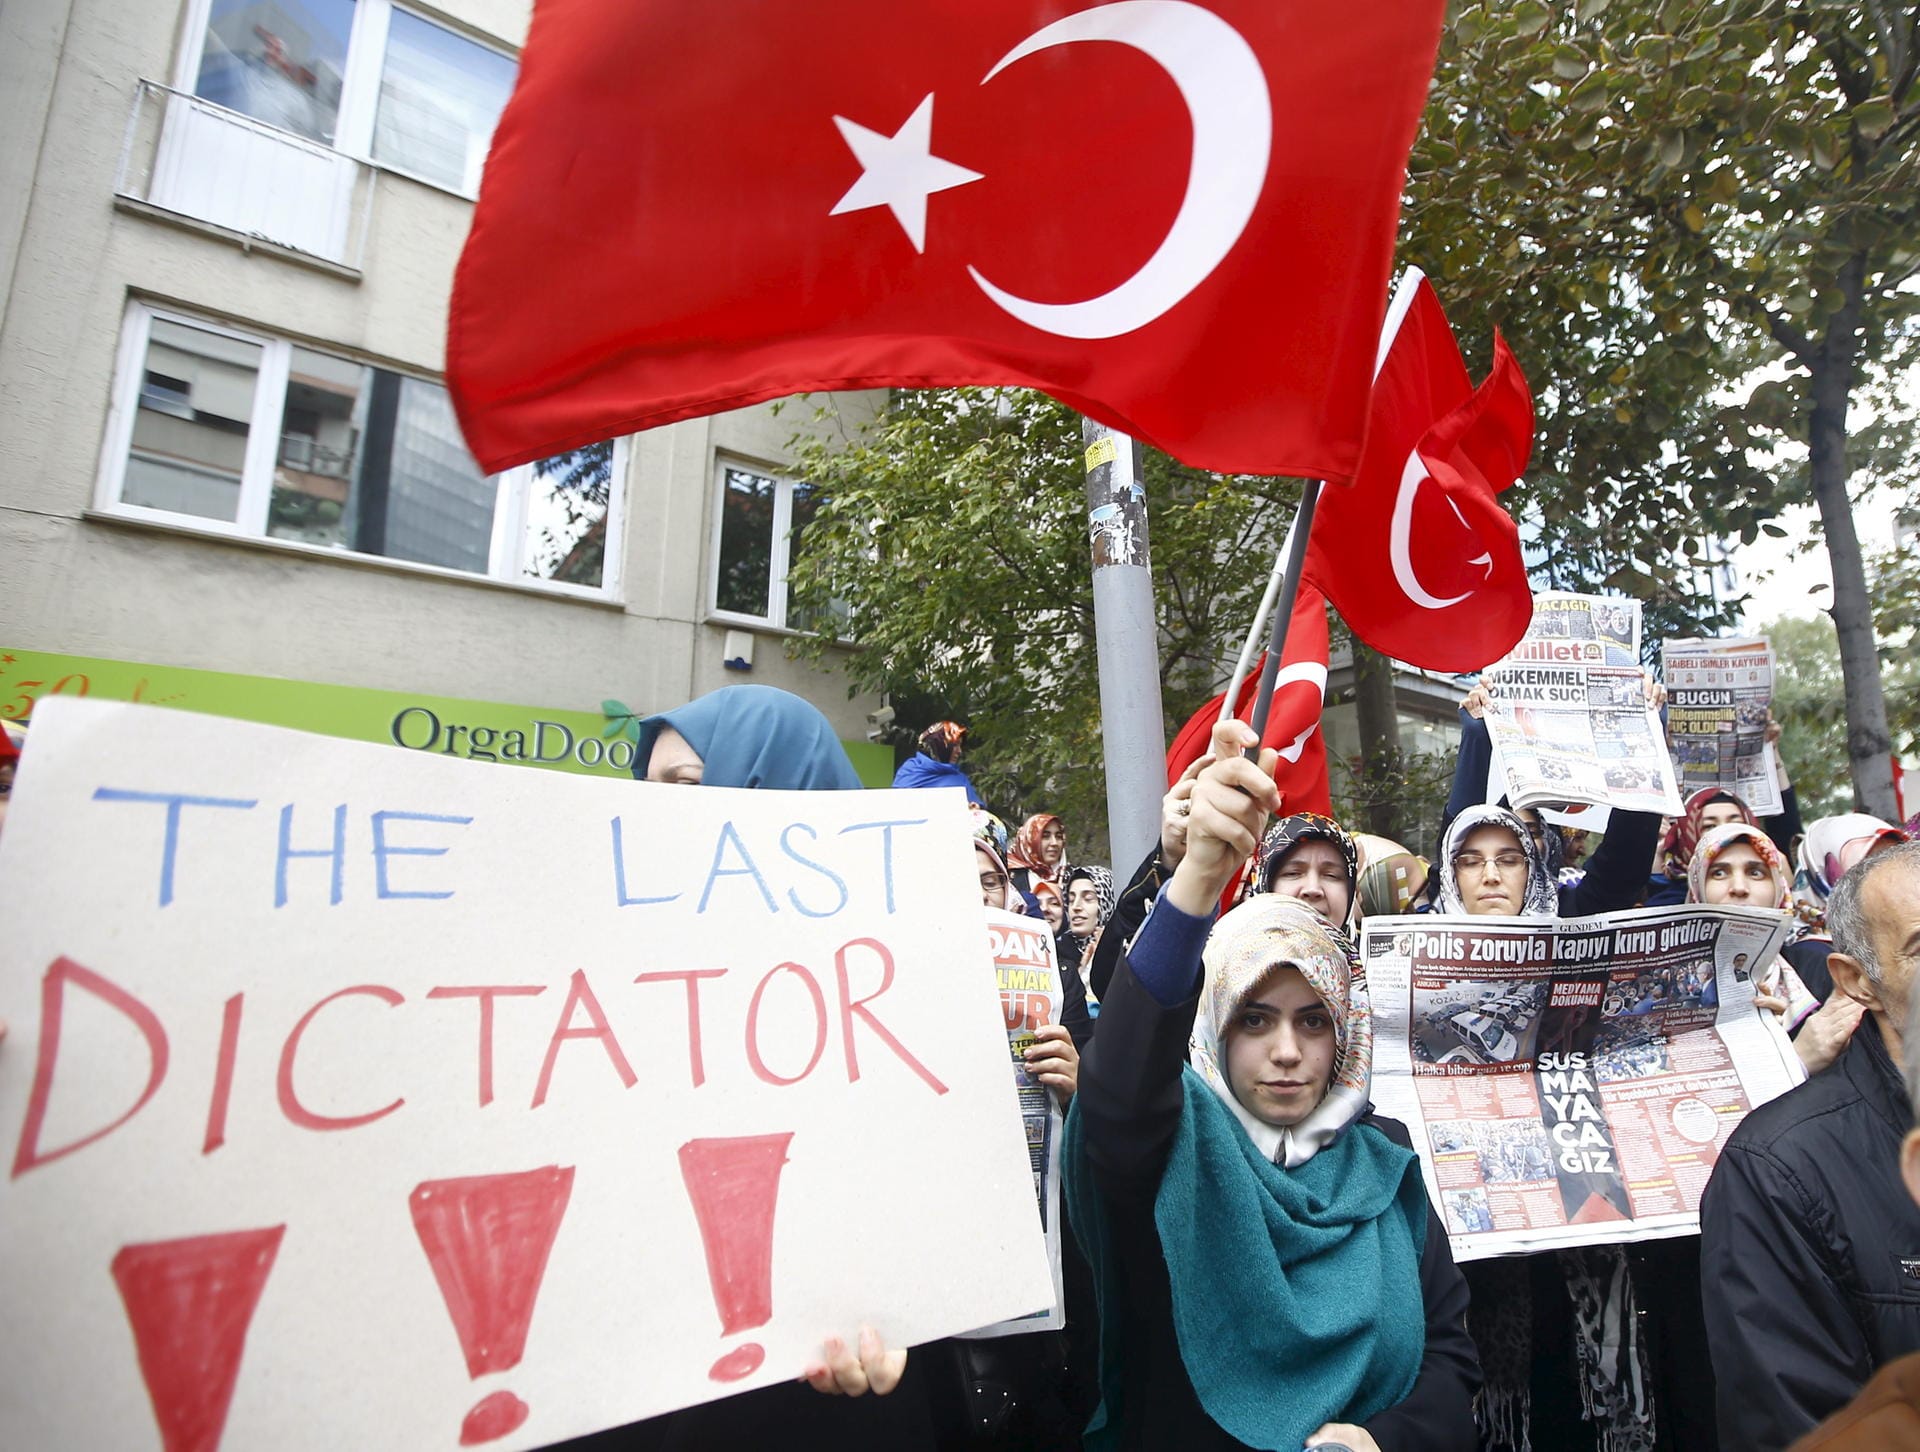 Für den Putschversuch beschuldigt die türkische Regierung vor allem die sogenannte Gülen-Bewegung. Dieser gehören viele Studenten, Lehrer und Journalisten an. Viele Anhänger wurden wegen der "Mitgliedschaft in einer terroristischen Organisation" festgenommen.